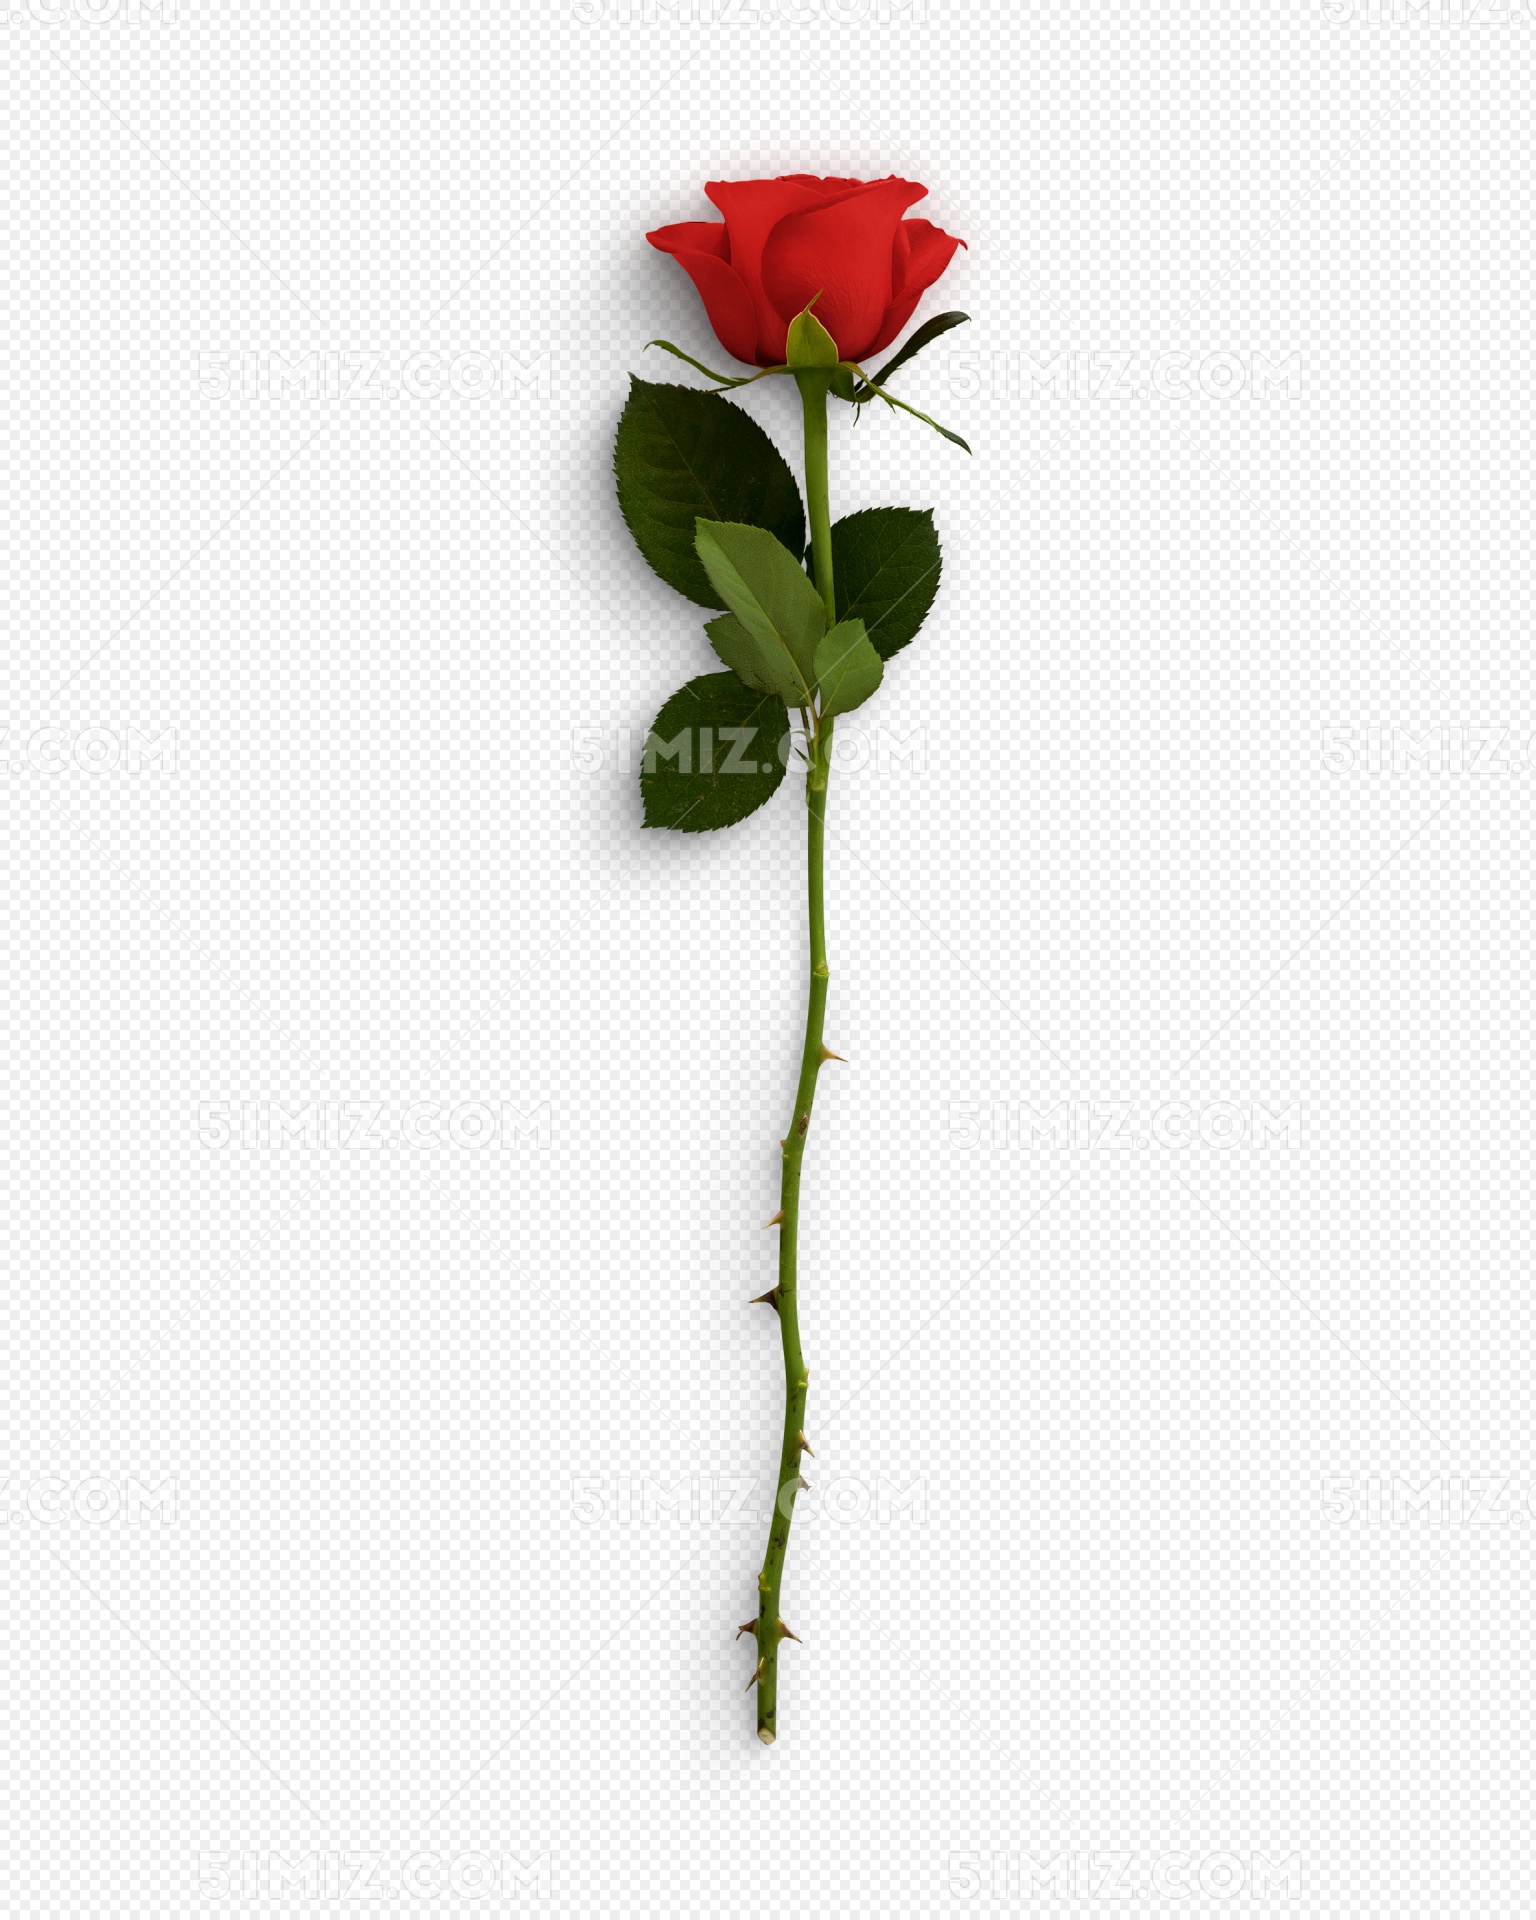 一支红玫瑰花图片 - 【花卉百科网】